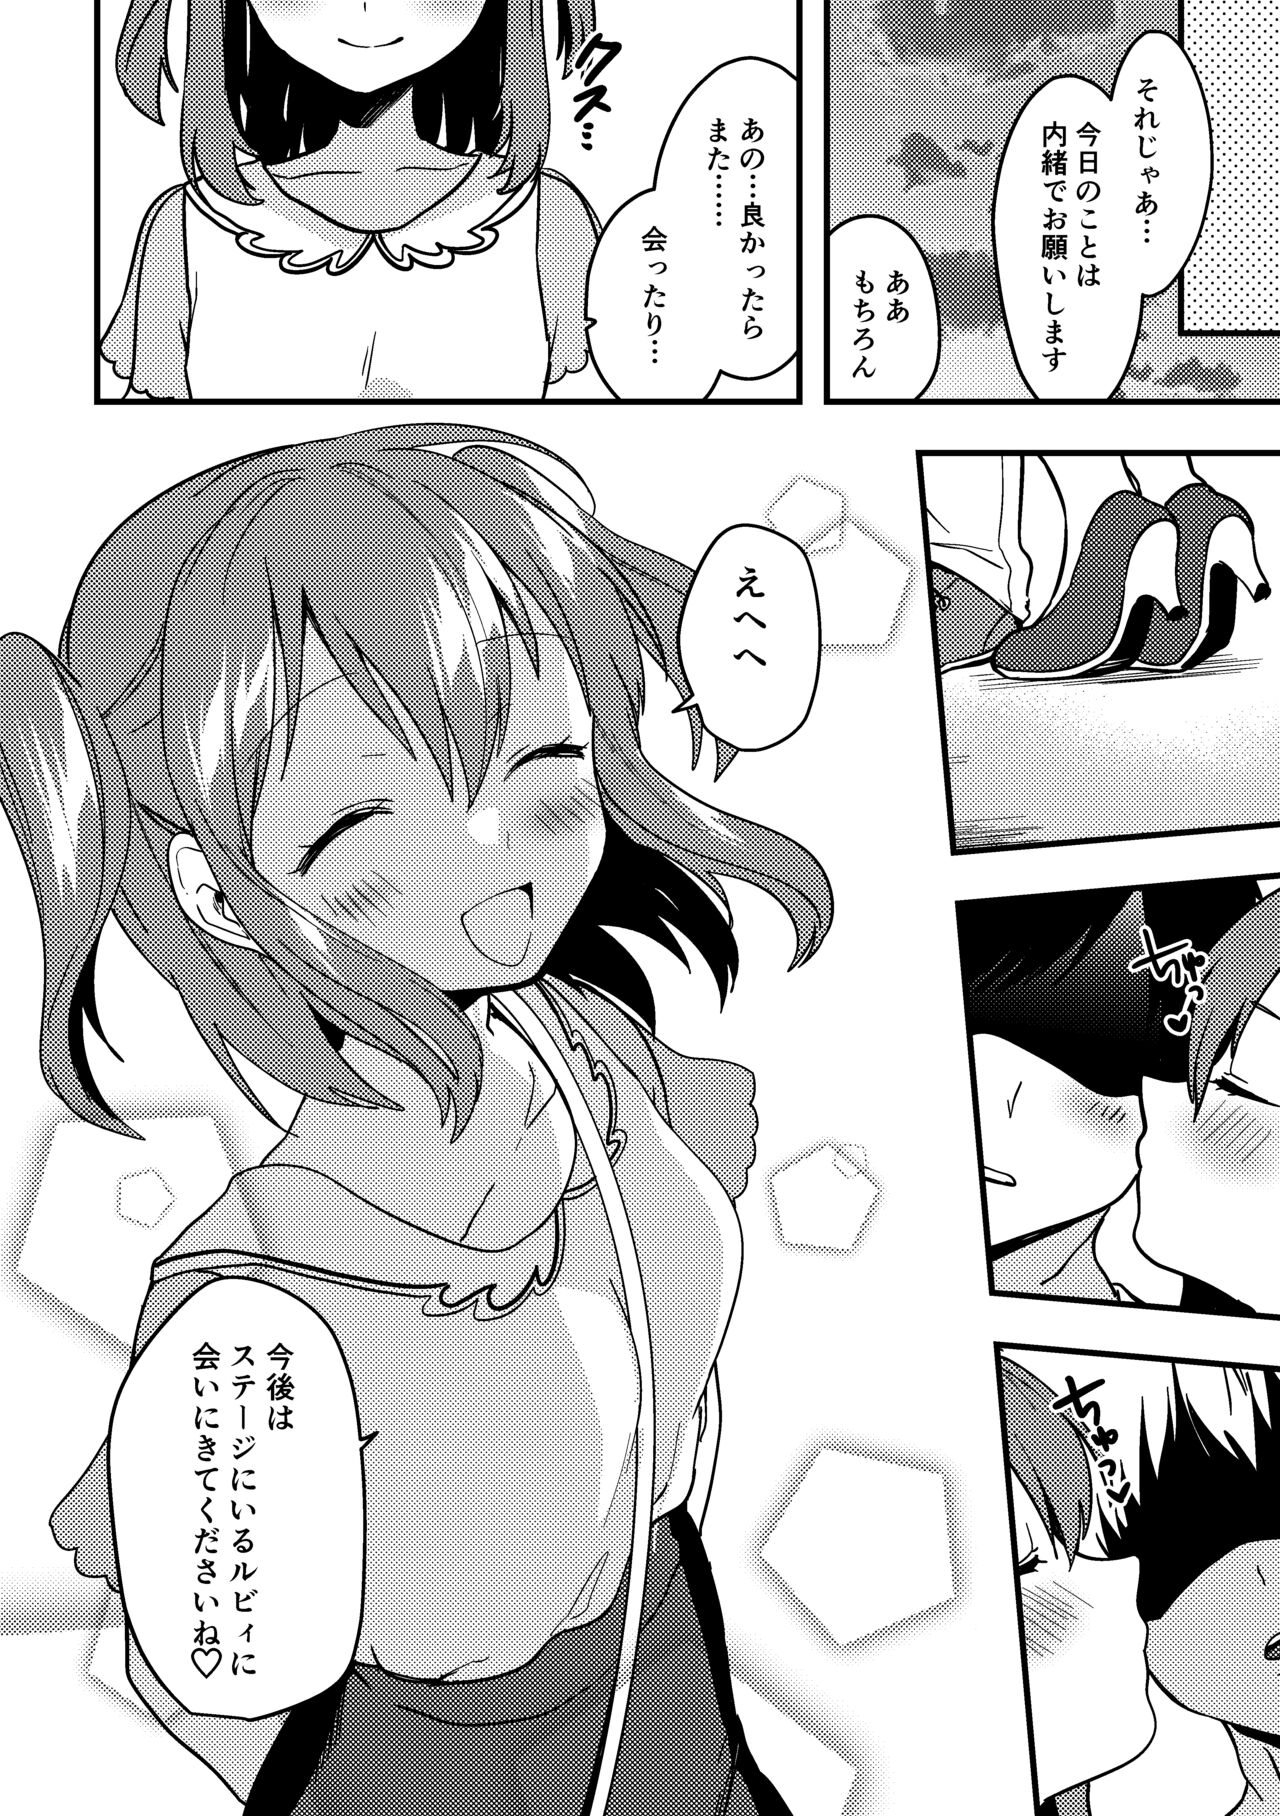 [かぜぱな] ルビィちゃんの10ページ漫画 (ラブライブ! サンシャイン!!)